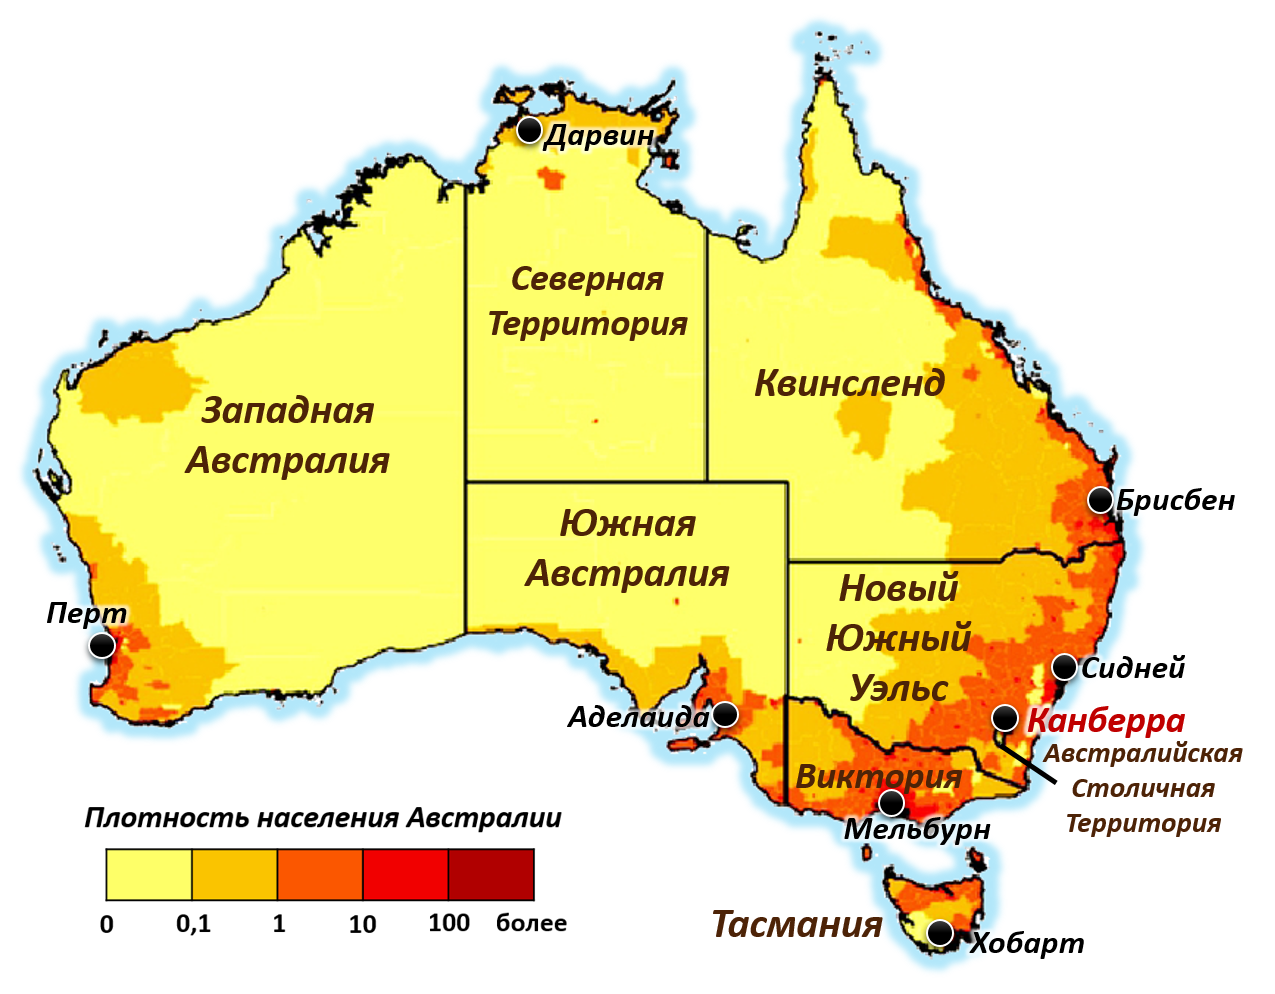 Выбрать государство для описания австралия. Карта плотности населения Австралии. Карта населенности Австралии. Плотность заселения Австралии на карте. Карта населения Австралии плотности населения.